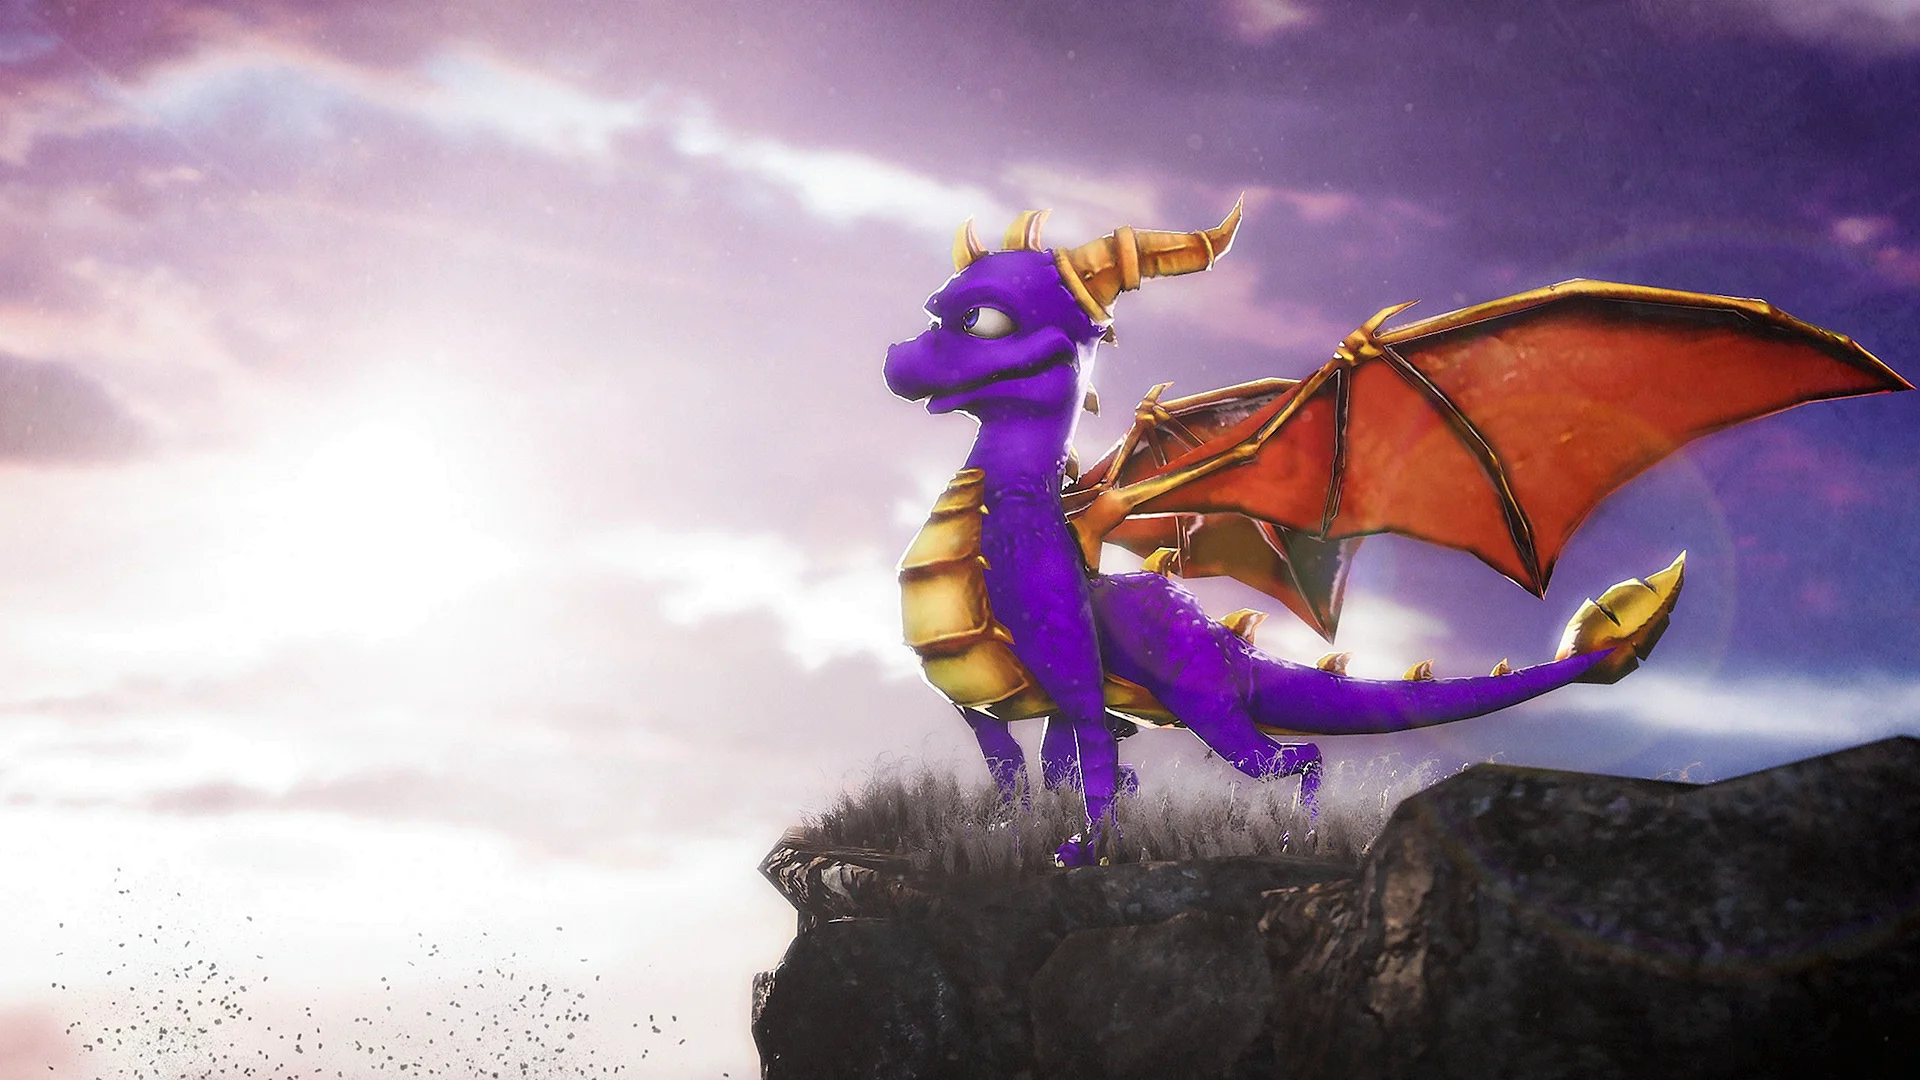 Spyro The Dragon Wallpaper